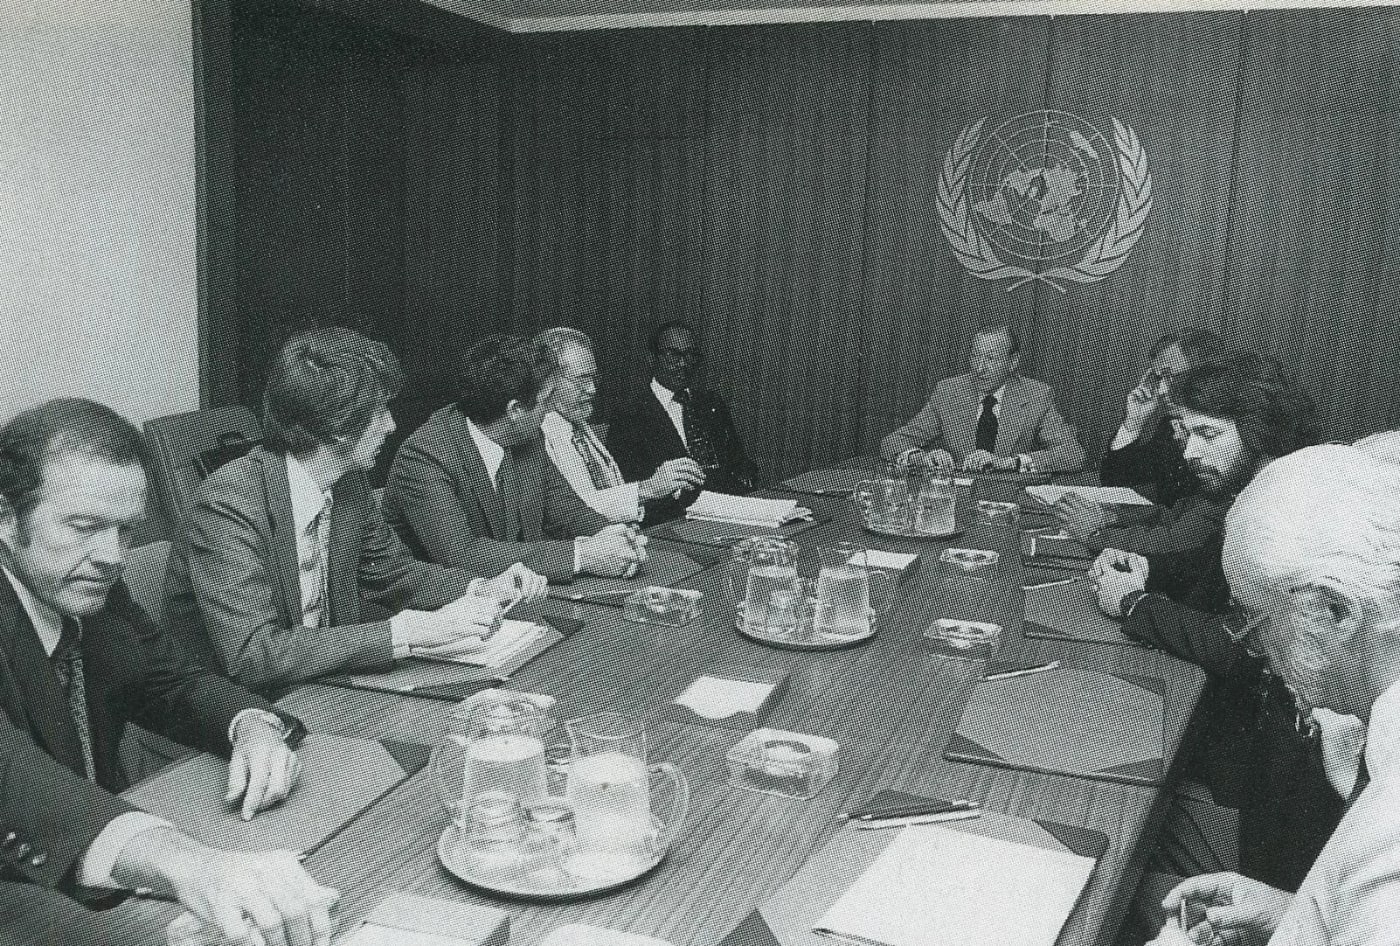 Vallée, el segundo por la izquierda, y Hynek, el cuarto, en una reunión con Kurt Waldheim en la ONU.